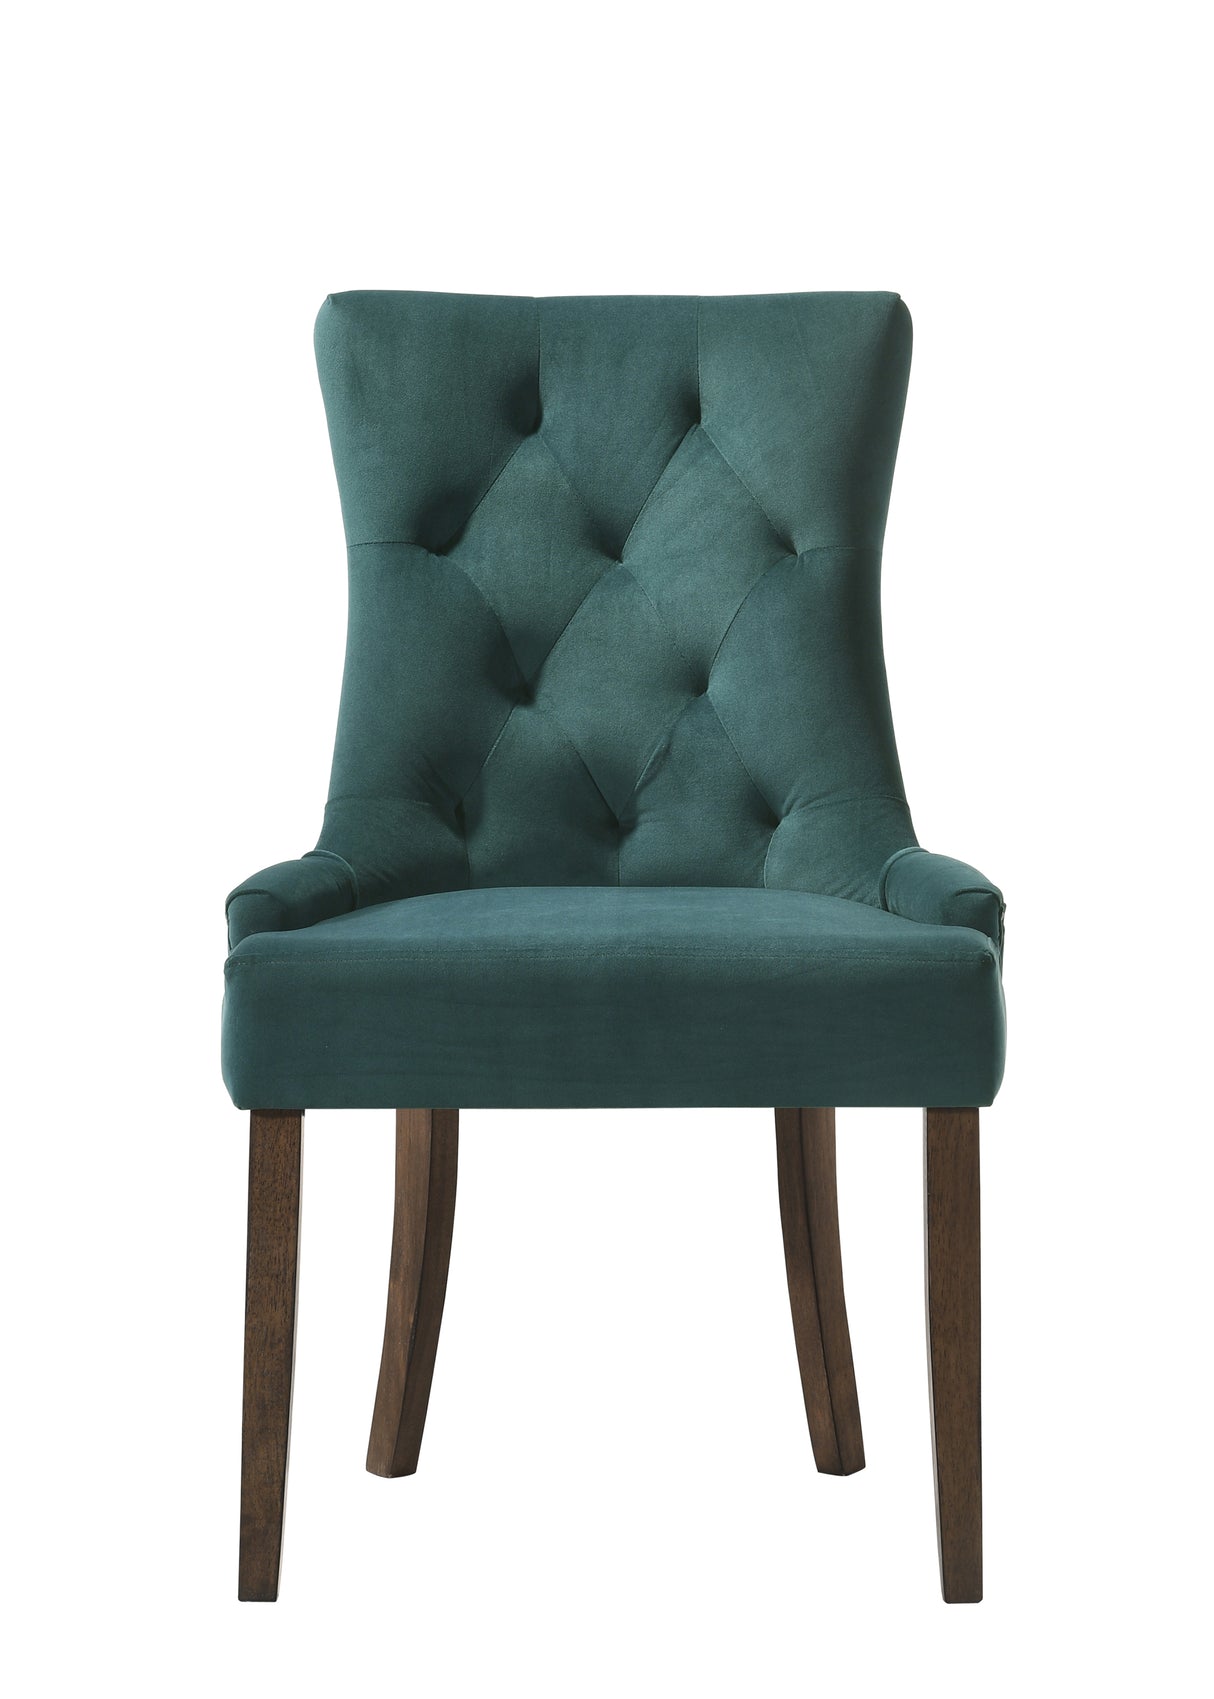 ACME Farren Side Chair, Green Velvet & Espresso Finish 77166 - Home Elegance USA